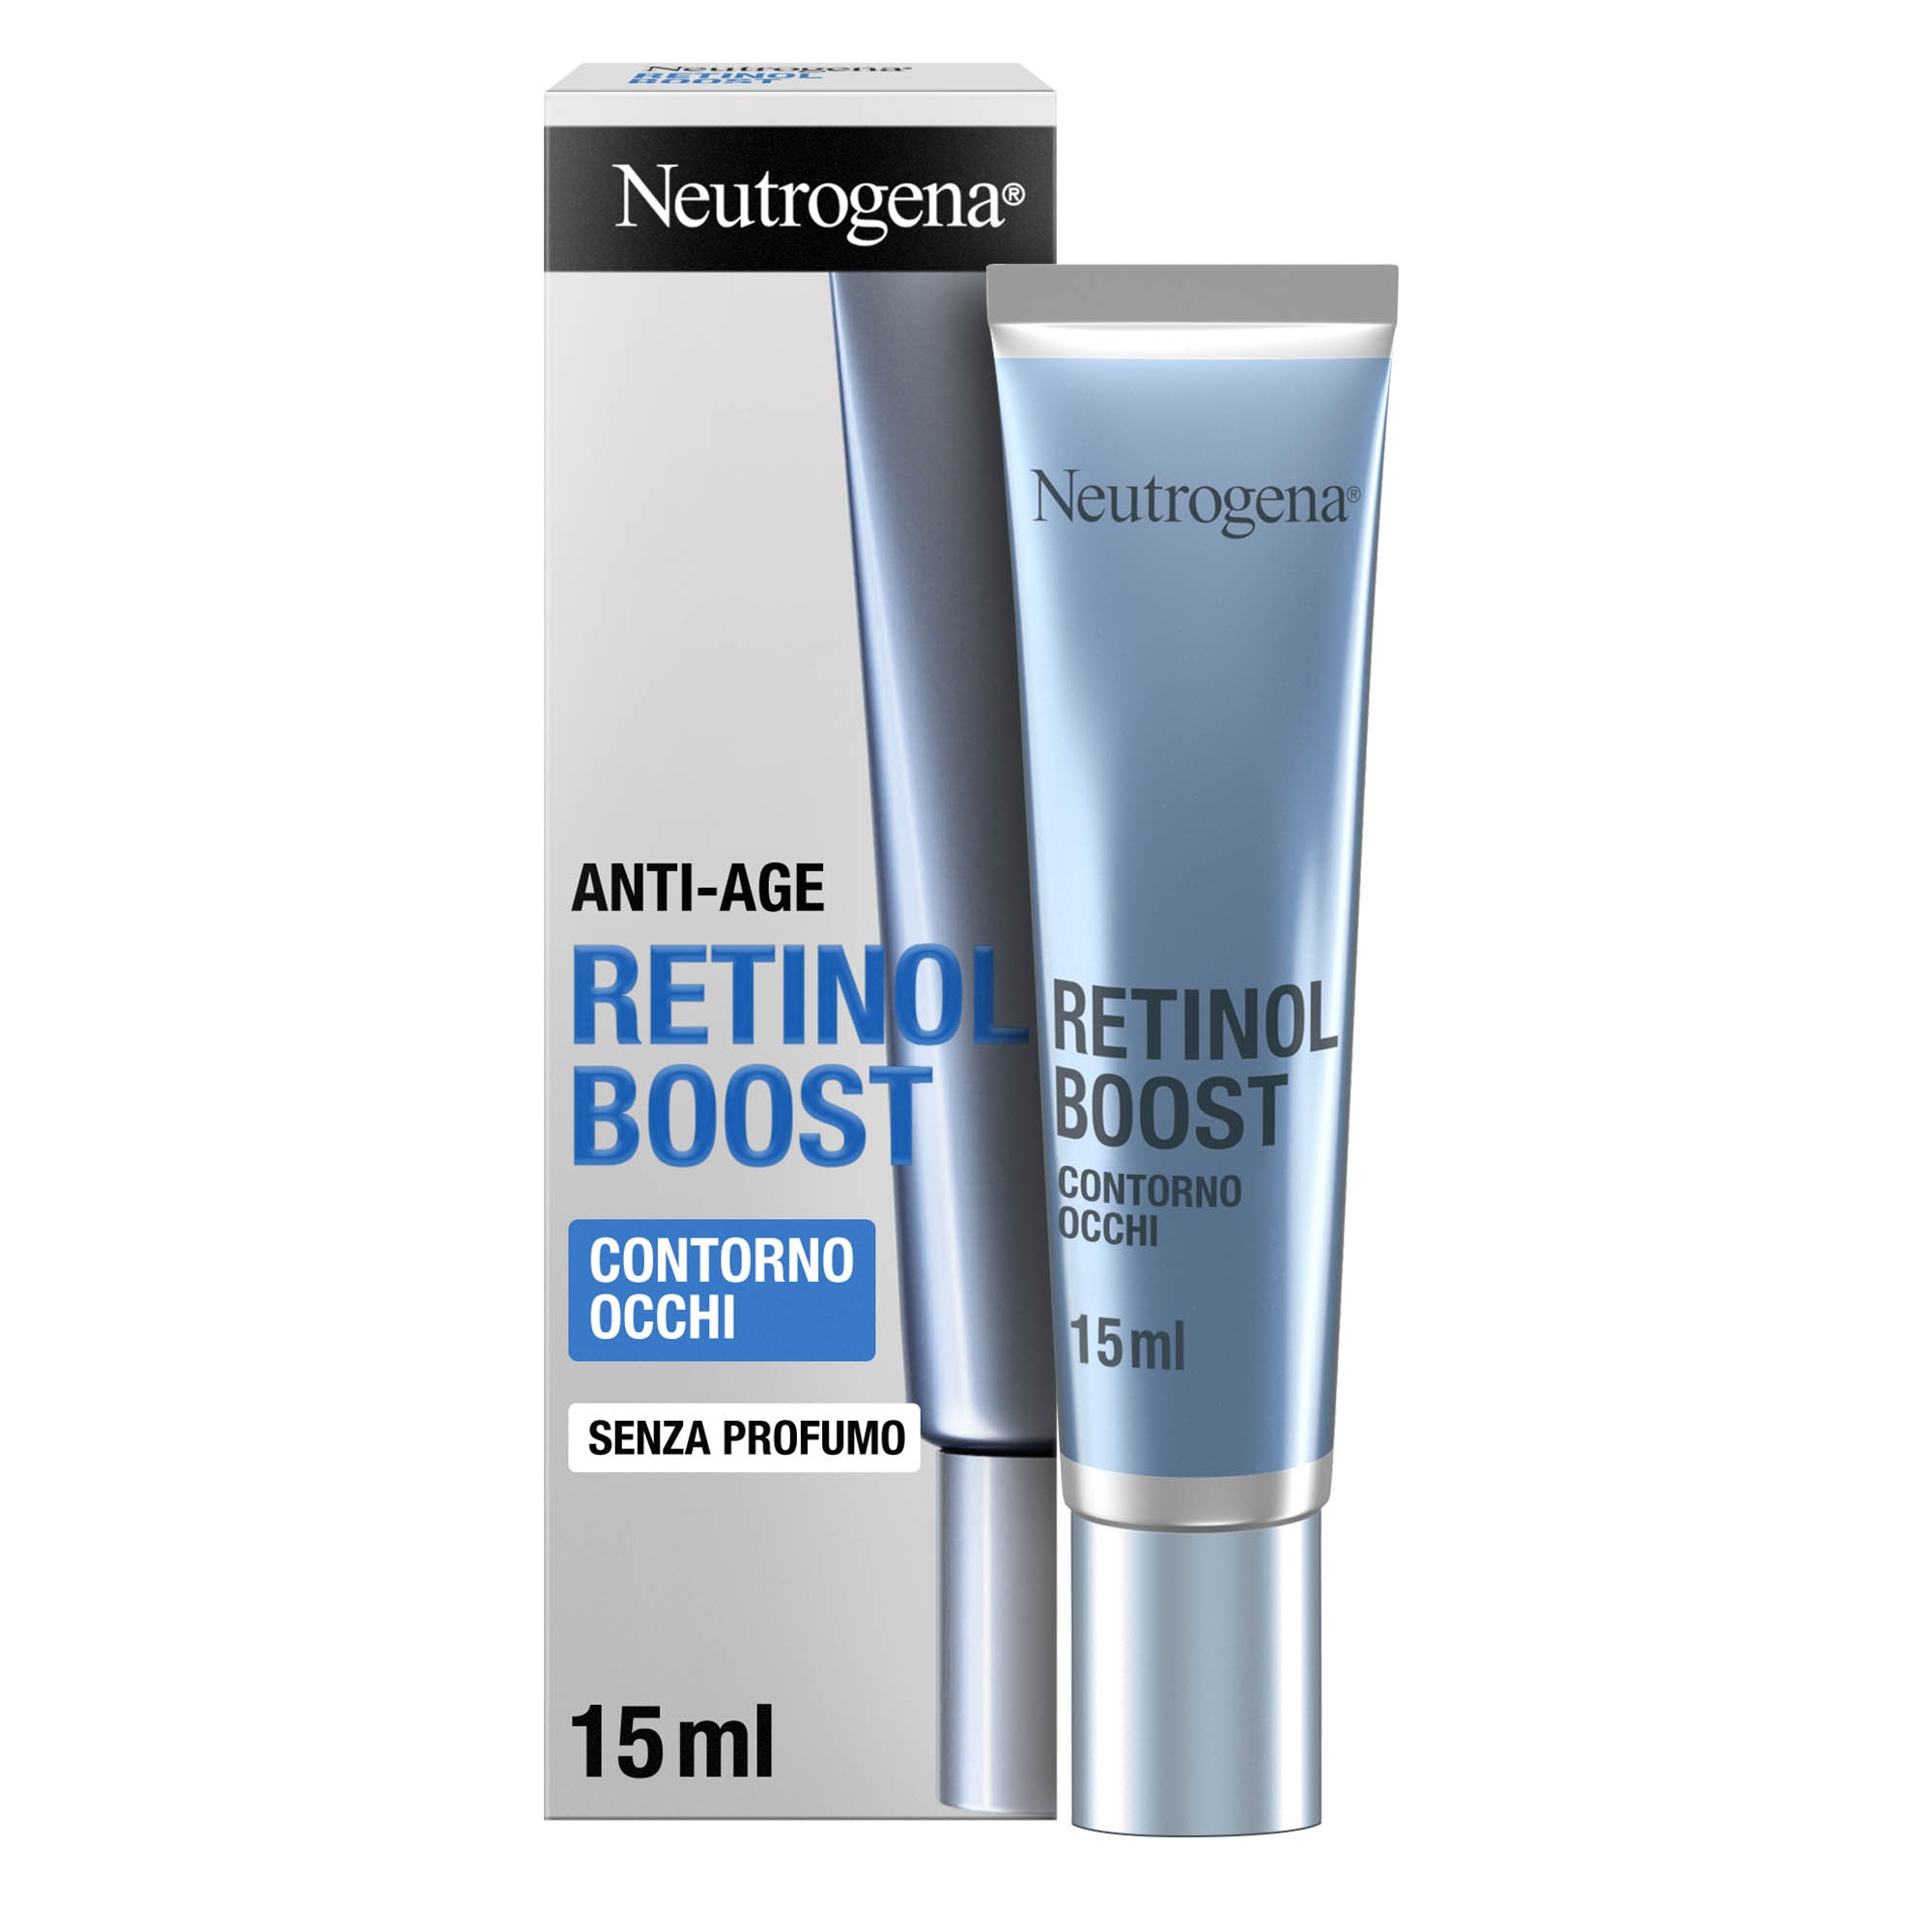 Neutrogena Retinol Boost Crema Contorno Occhi con Retinolo Puro 15 ml